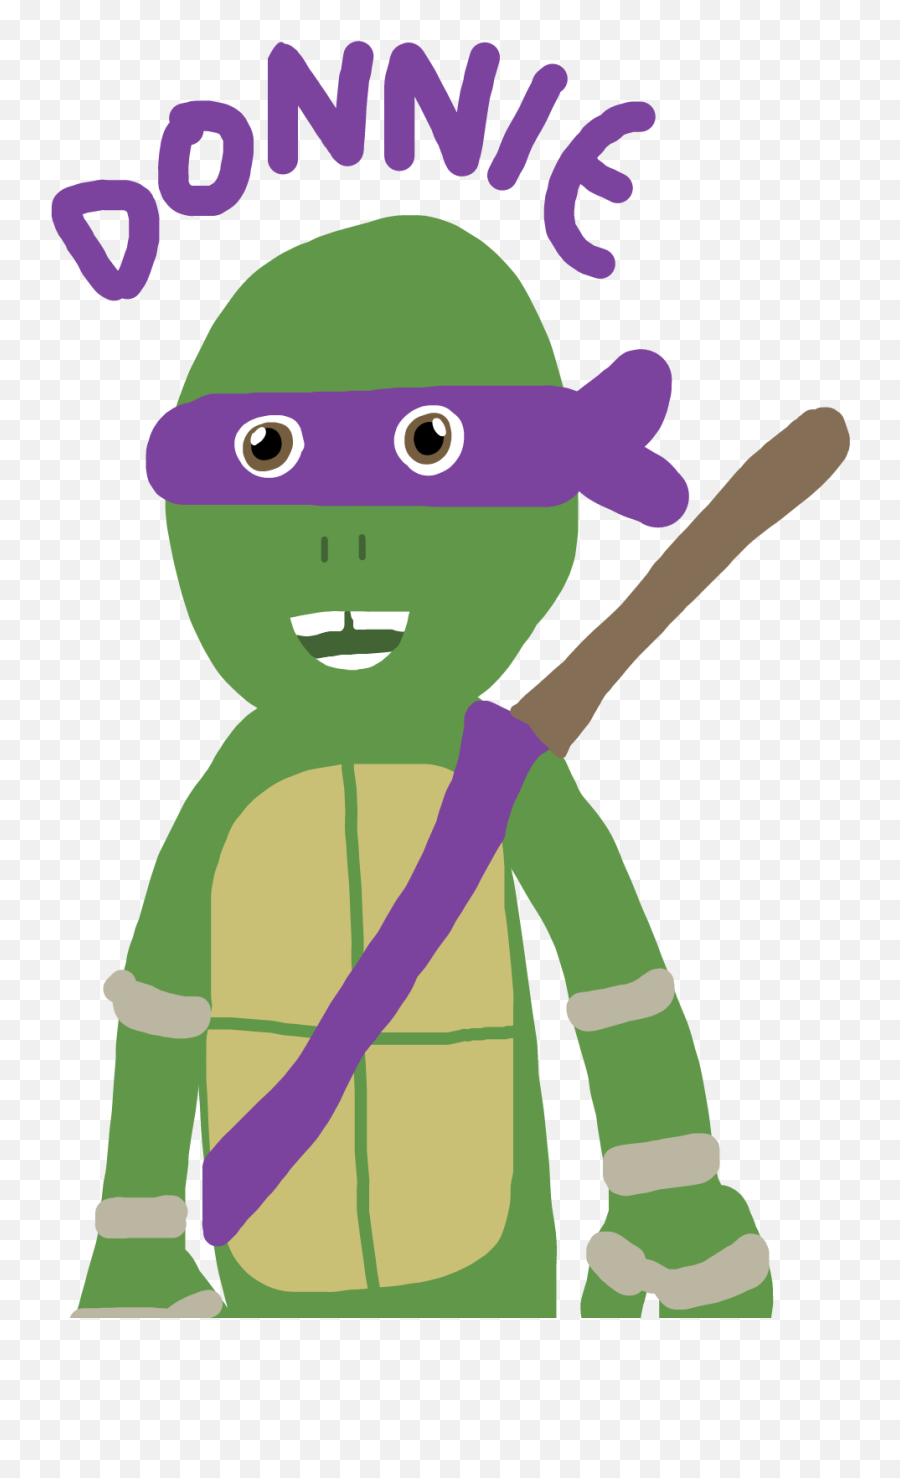 Largest Collection Of Free - Toedit Ninja Turtle Stickers On Cartoon Emoji,Ninja Turtle Emoji